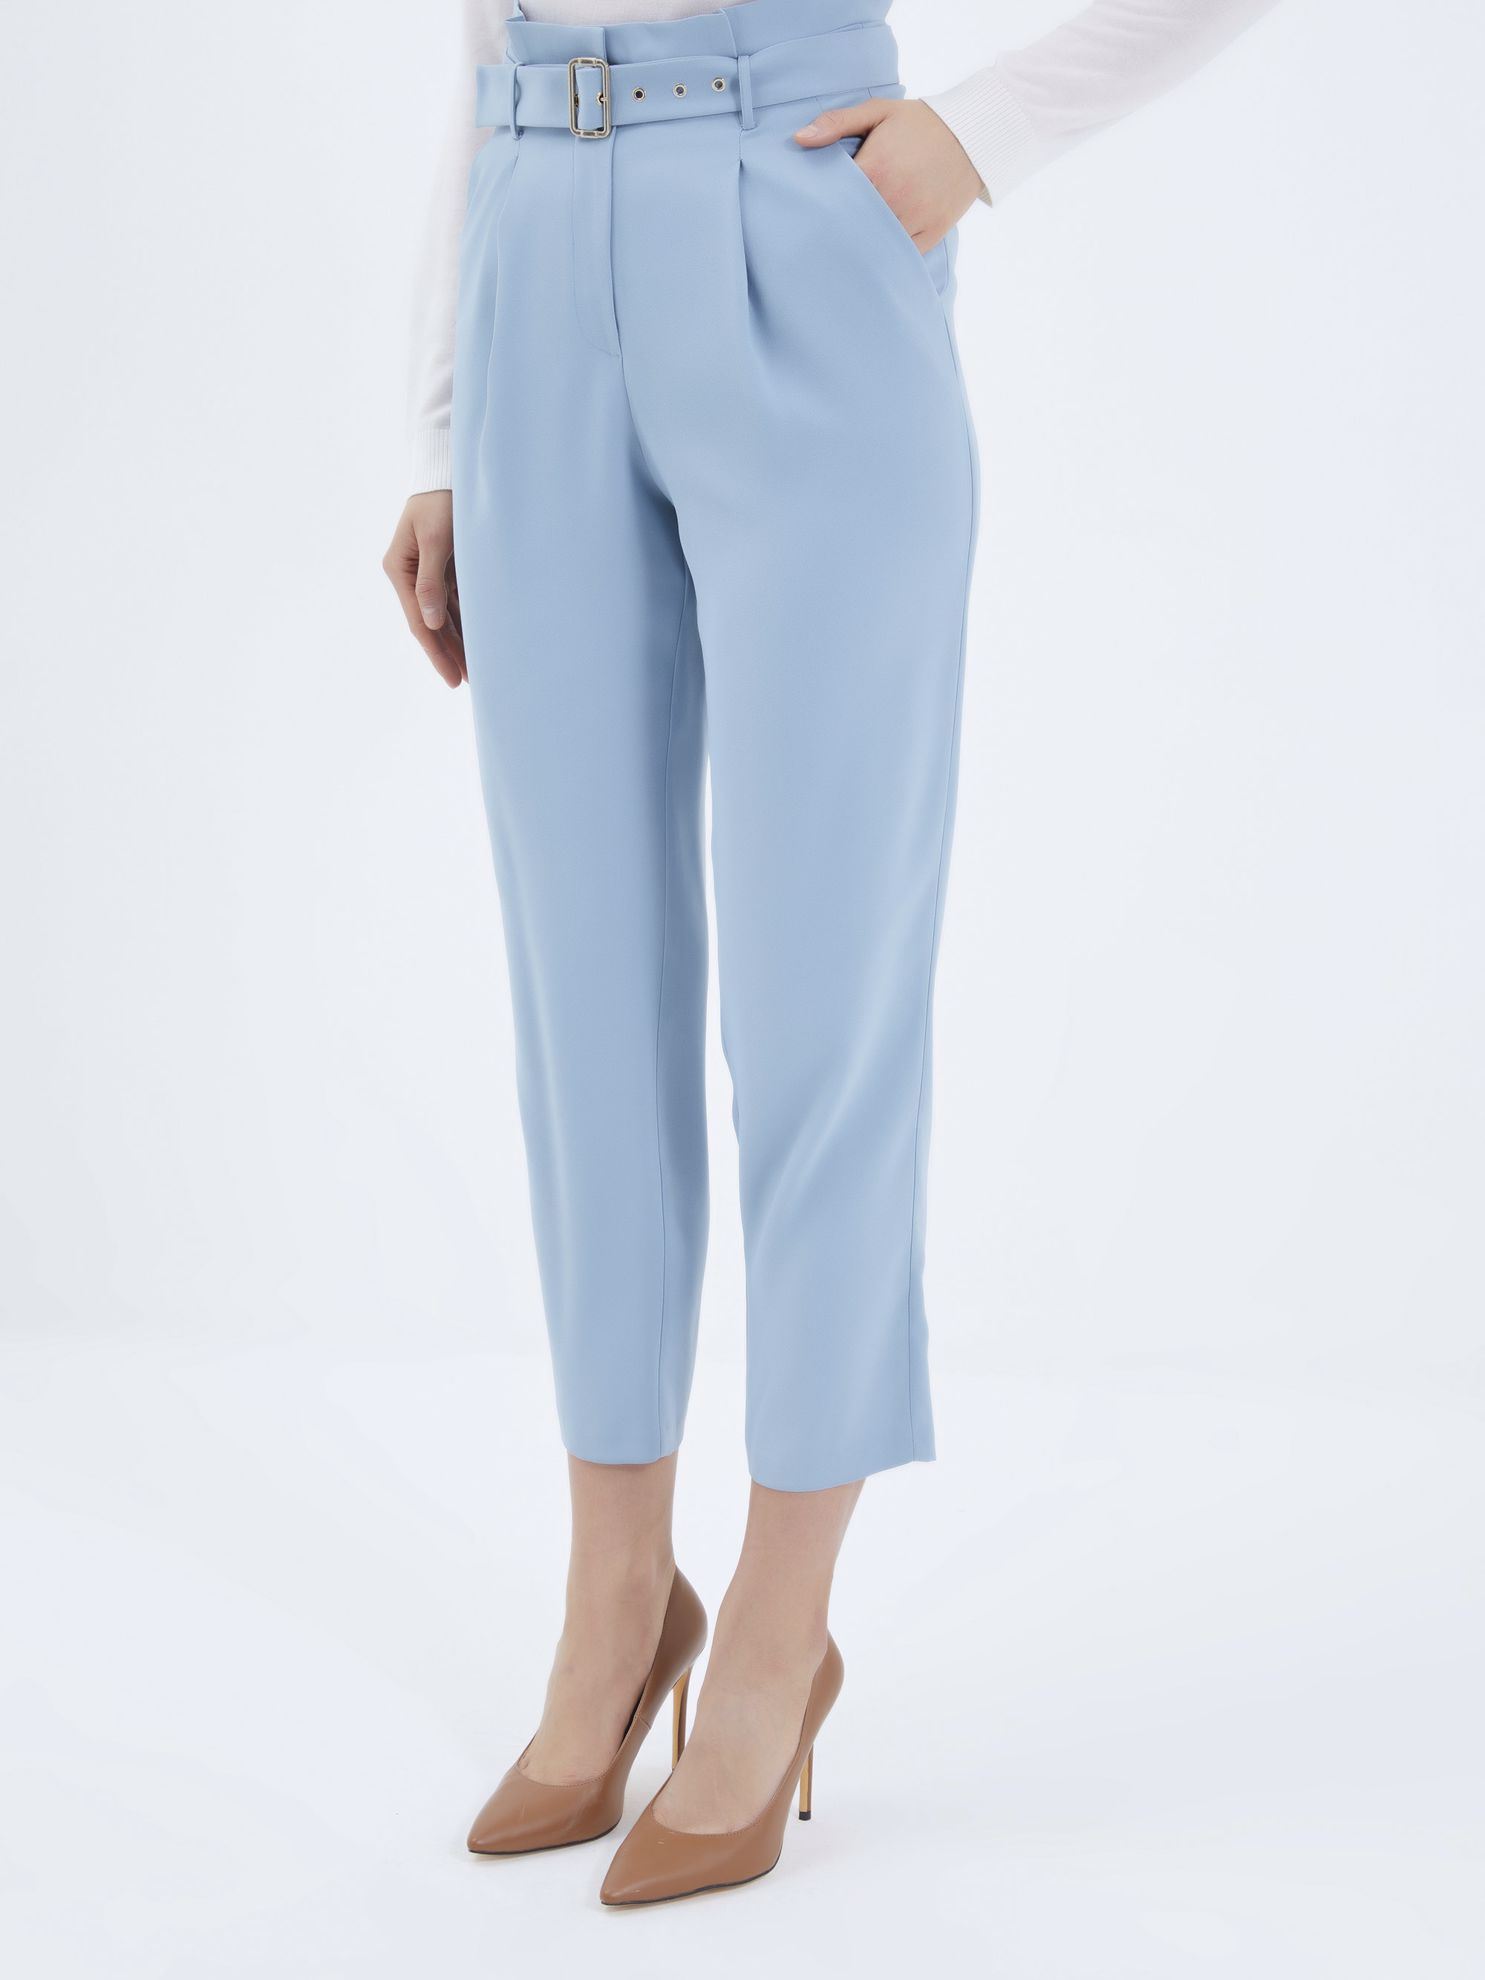 Karaca Kadın Pantolon-Mavi. ürün görseli